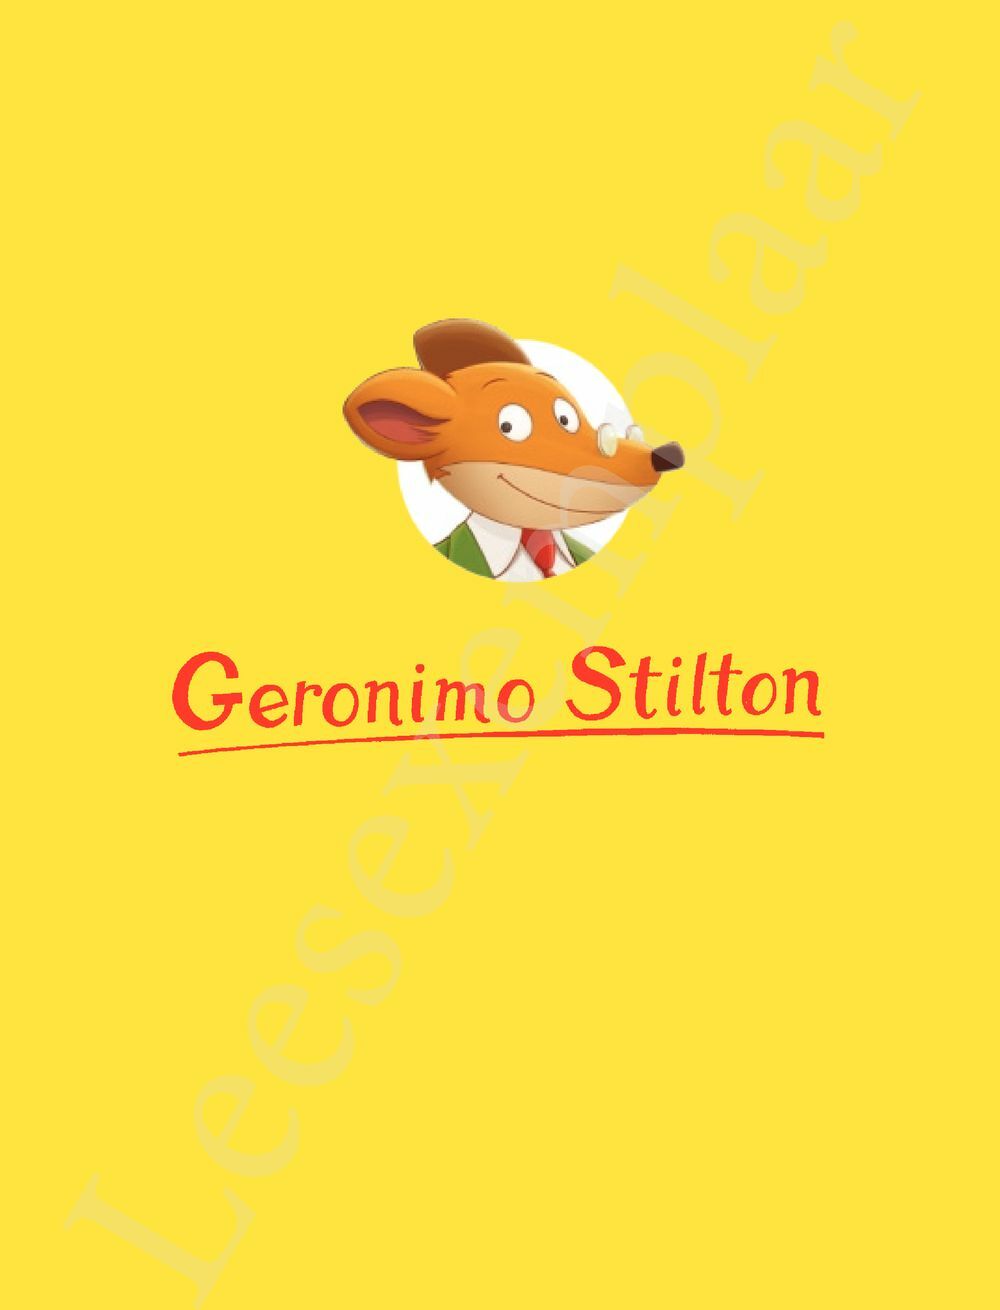 Preview: Geronimo Stilton - Huckleberry Finn